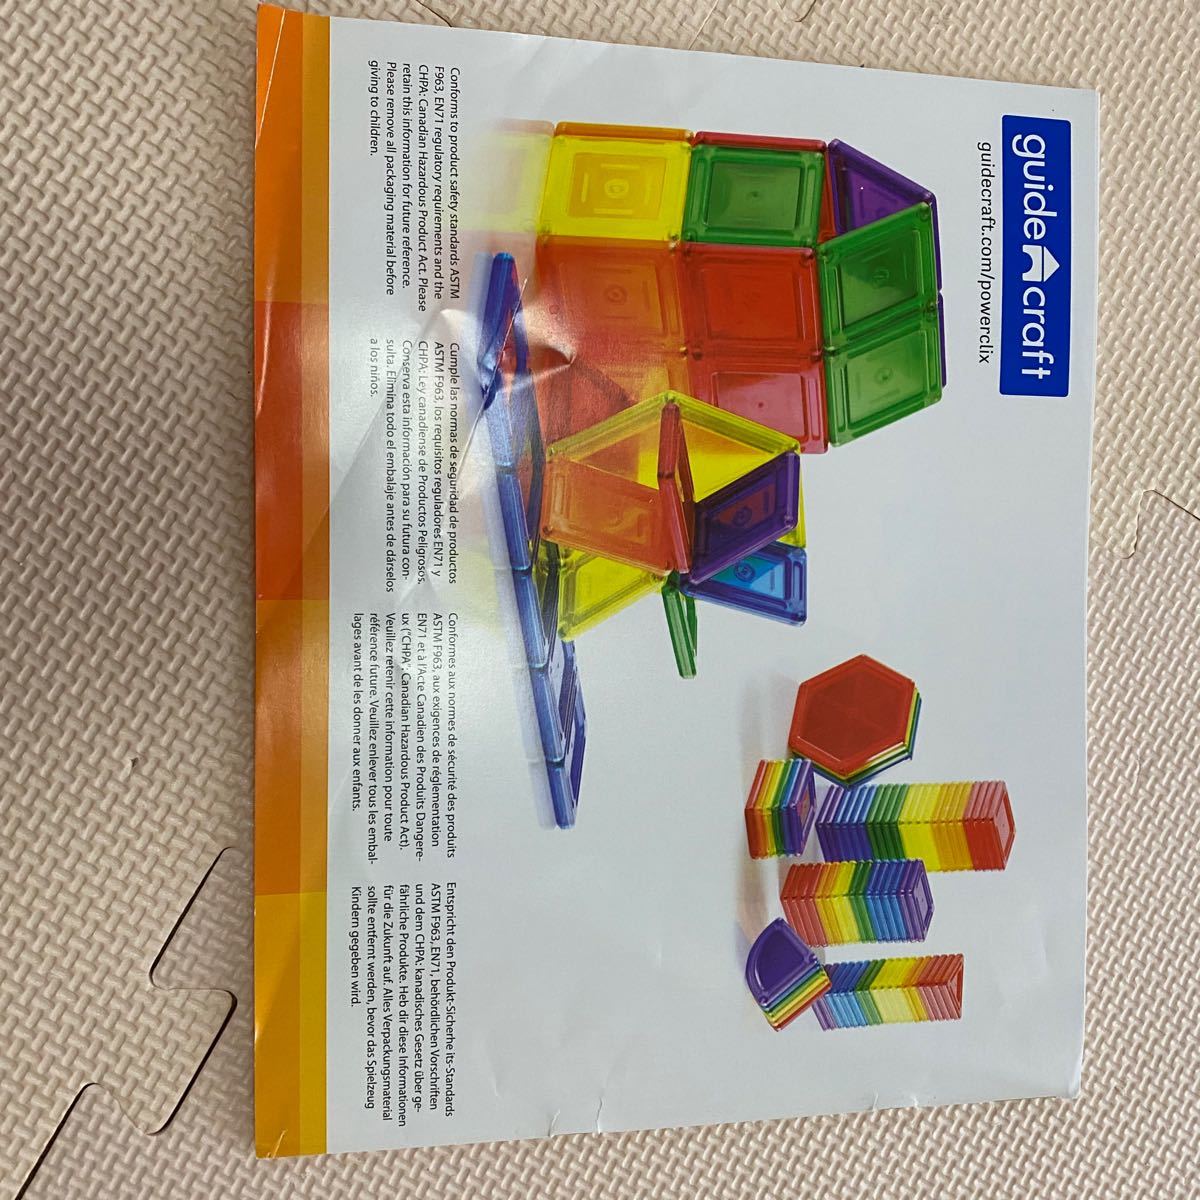 トイザらス限定 パワークリックス マグネットブロック 94ピース 知育玩具 立体パズル 磁石ブロック